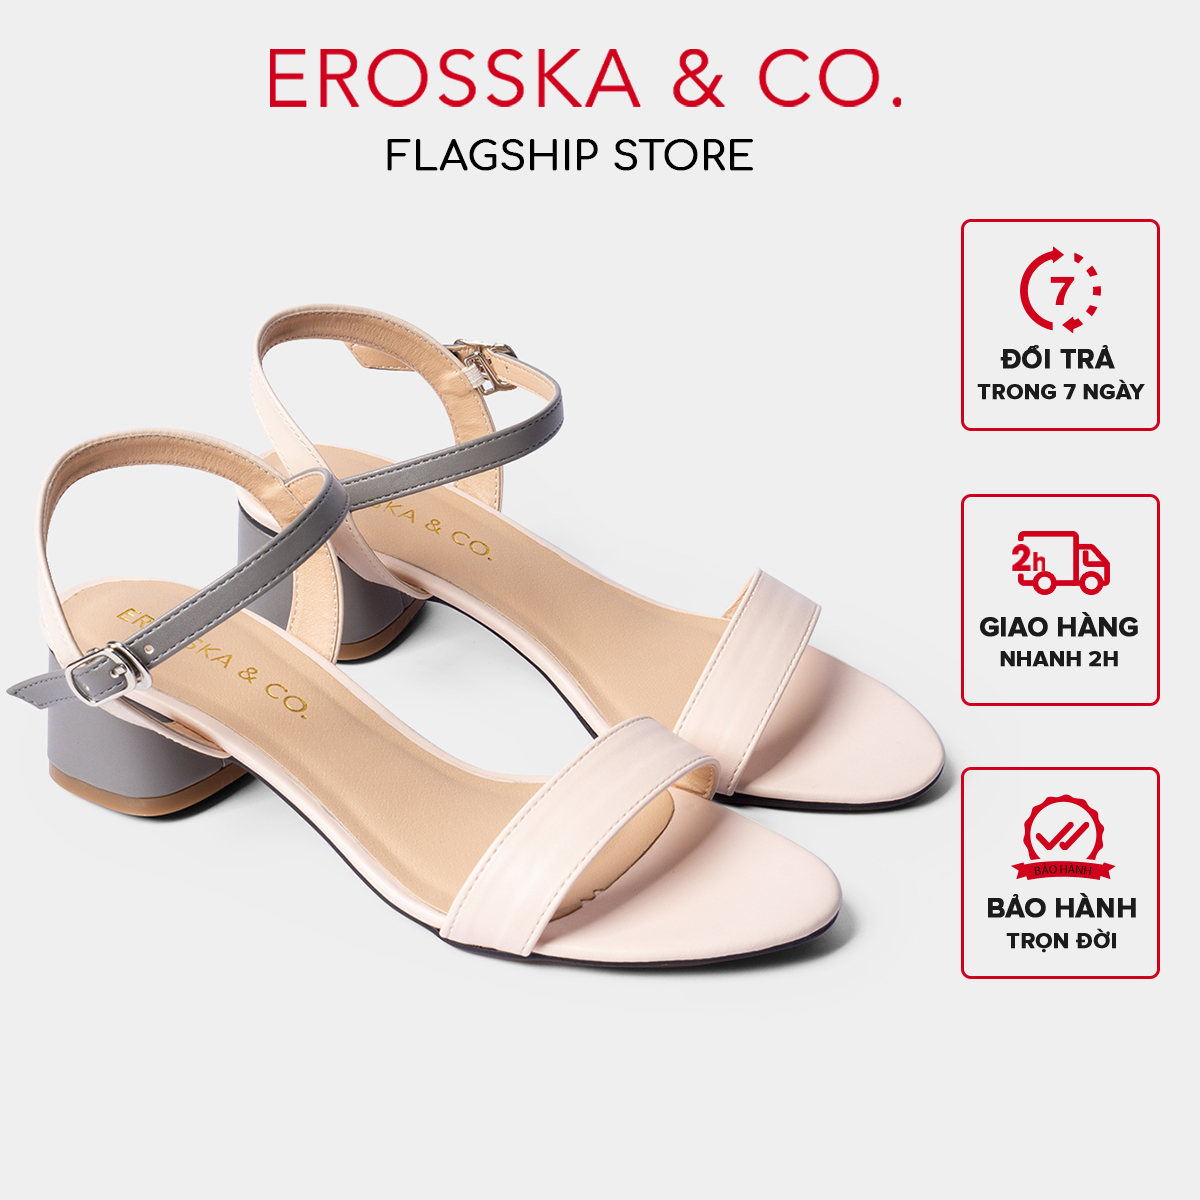 Giày sandal cao gót Erosska mũi tròn phối dây nhiều màu tinh tế cao 3cm màu xanh - EB019